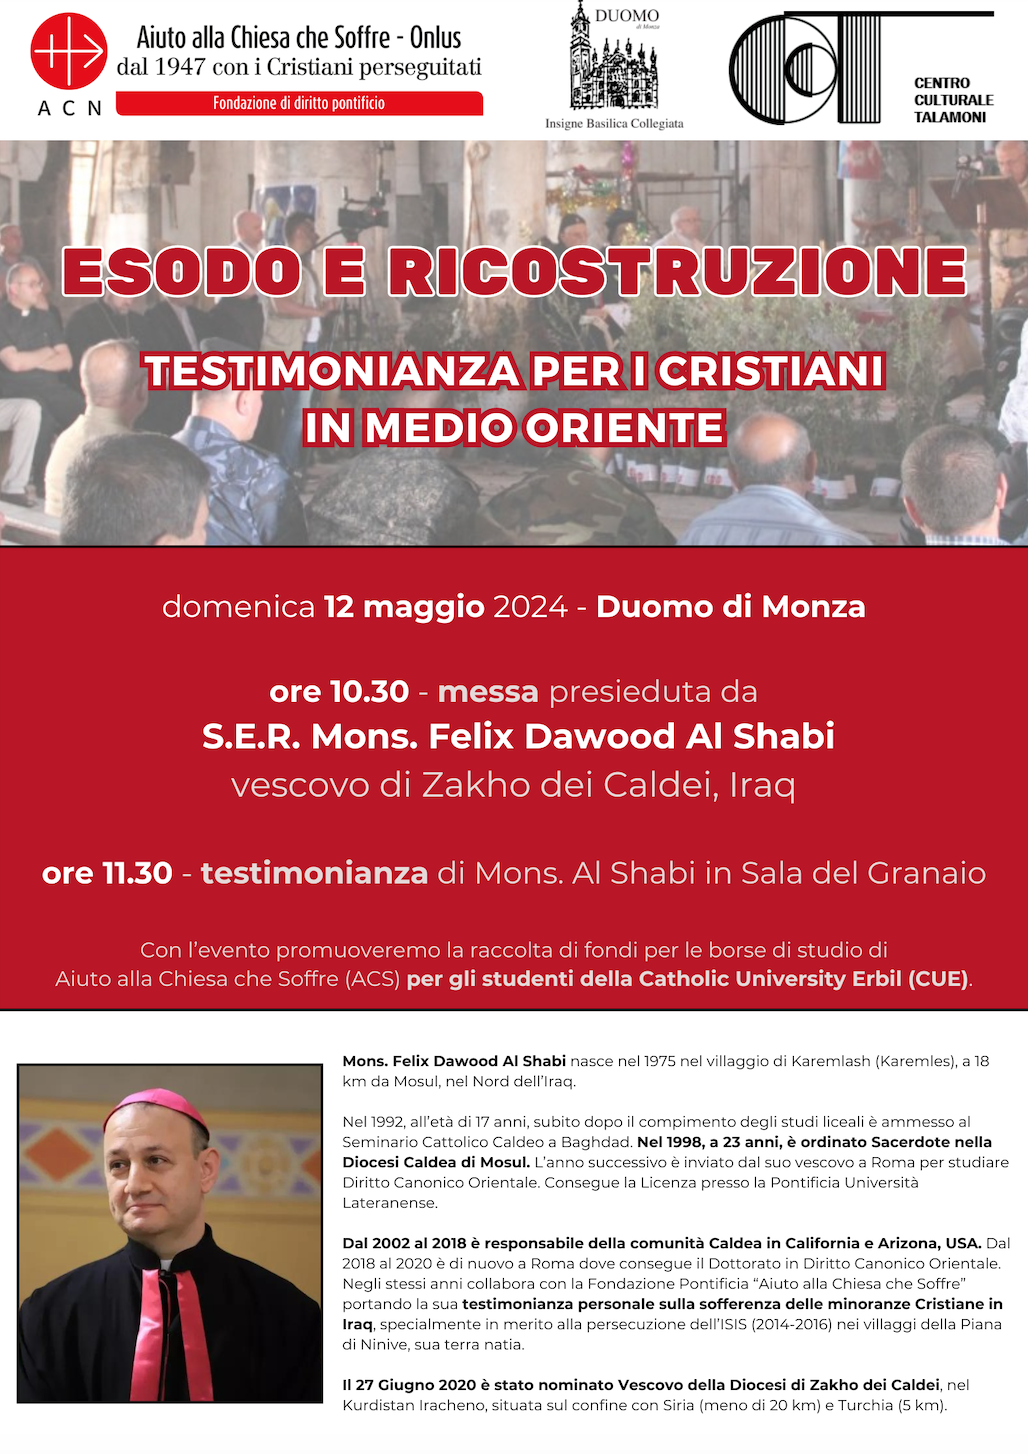 Featured image for “Monza: Testimonianza per i cristiani in Medio Oriente”